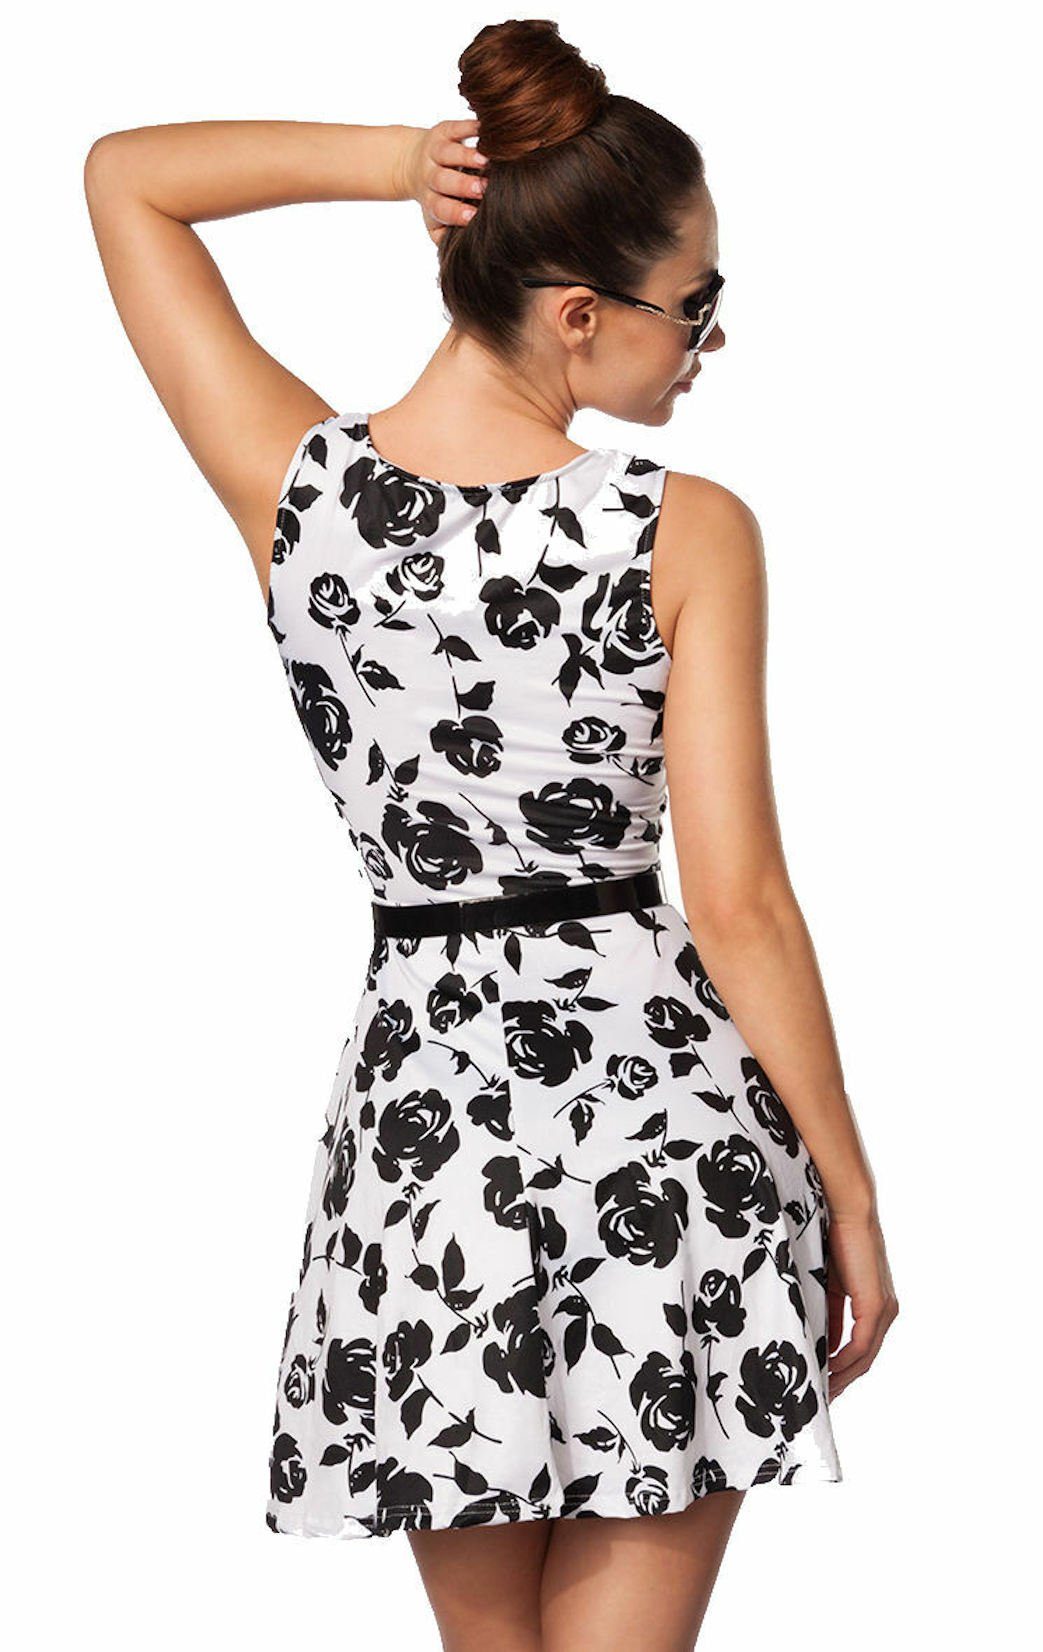 Minikleid Gürtel geblümt weiß Sommerkleid schwarz Damen-Kleid luftiges Sommerkleid